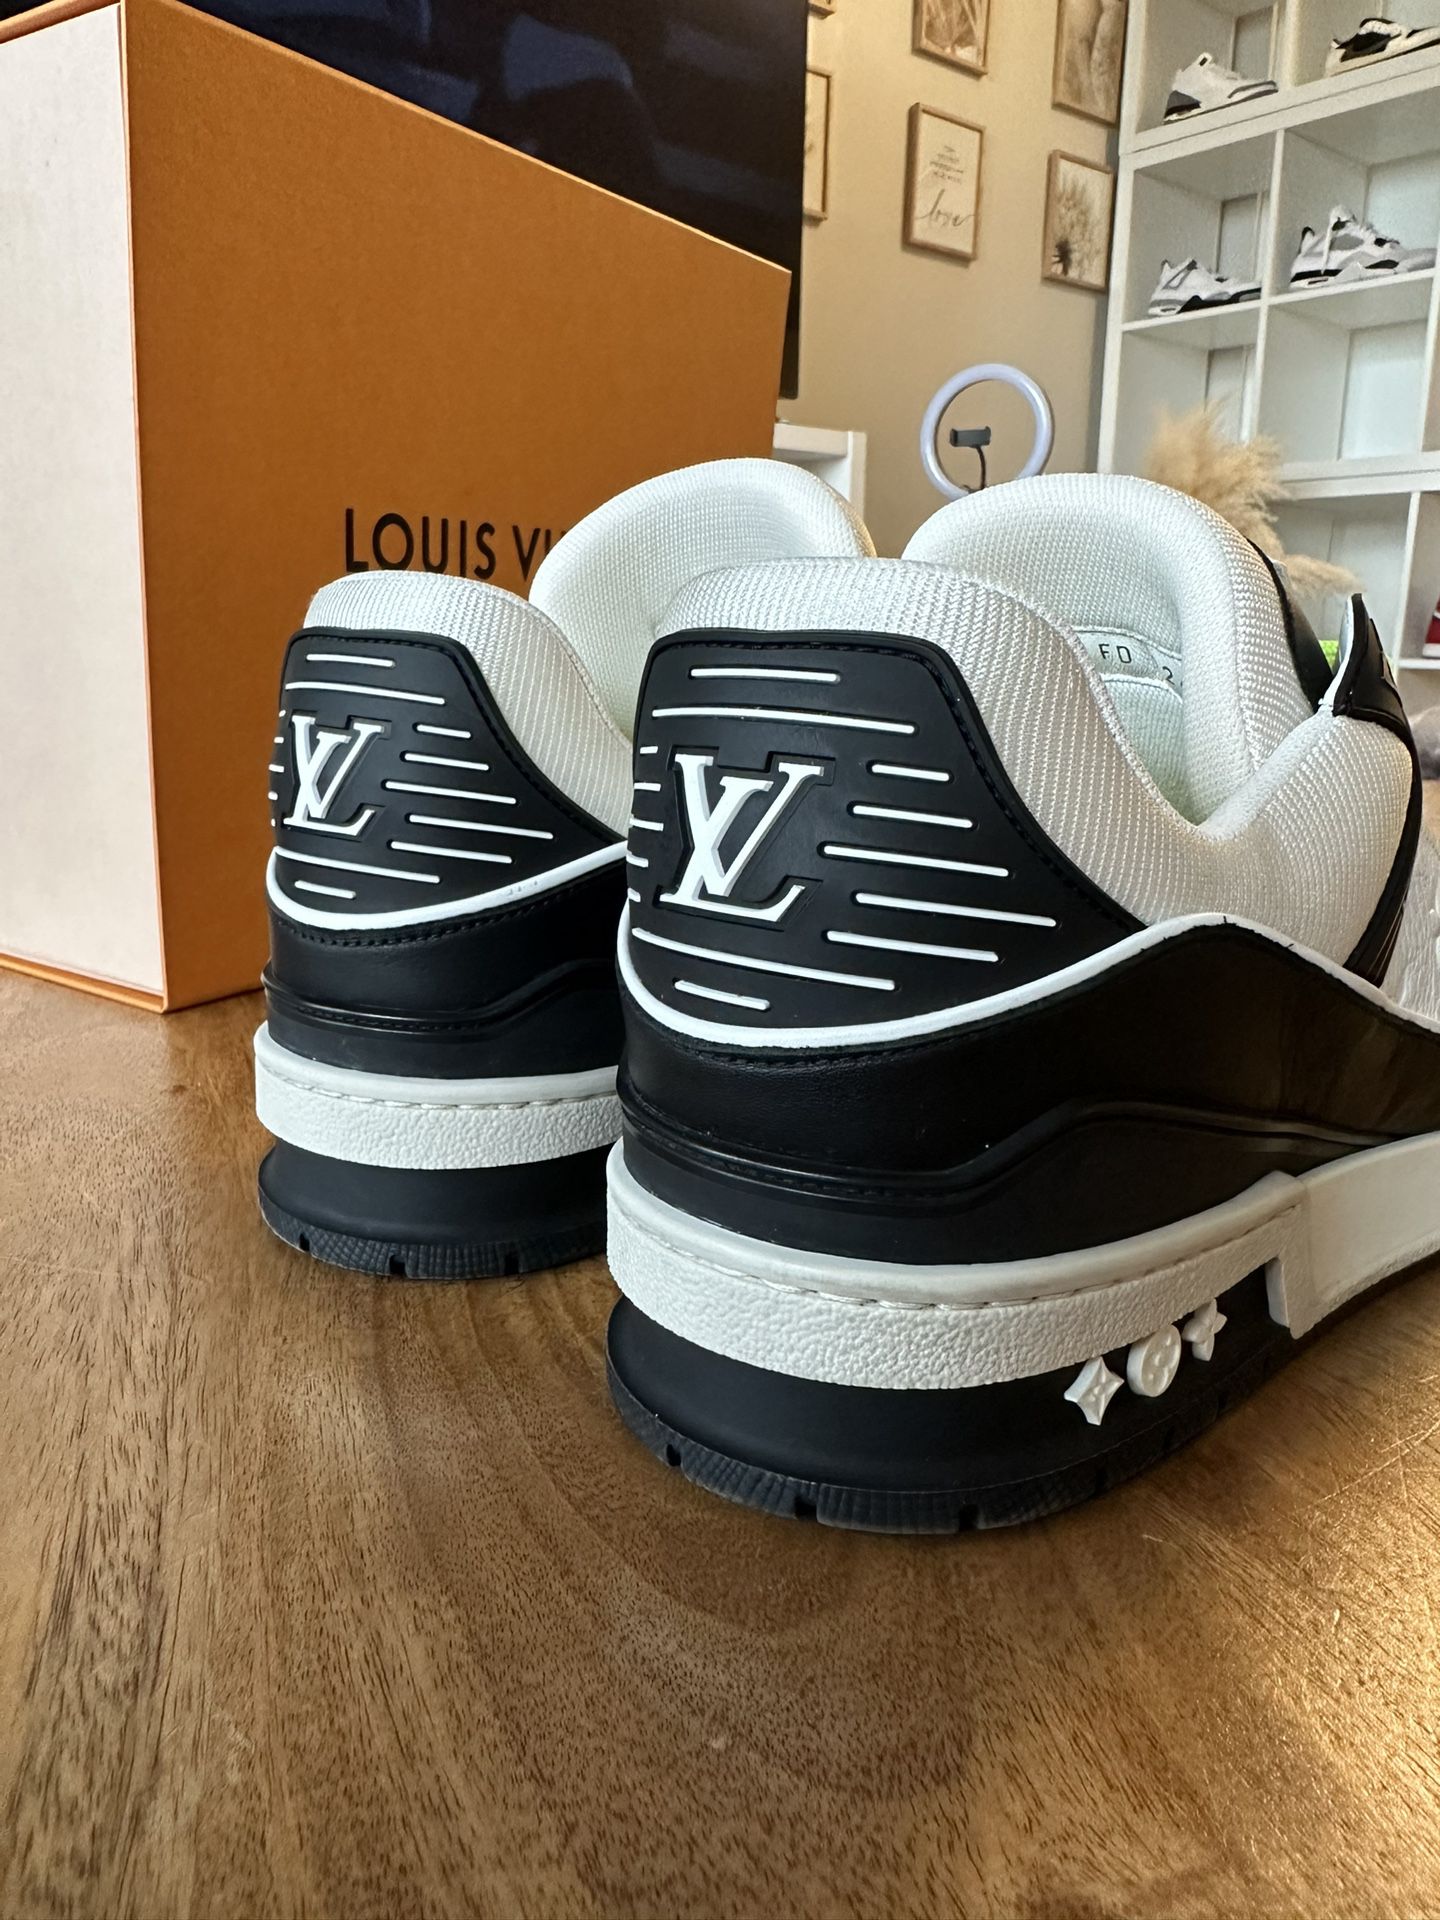 Louis Vuitton Elliptic Sneakers for Sale in Miramar, FL - OfferUp